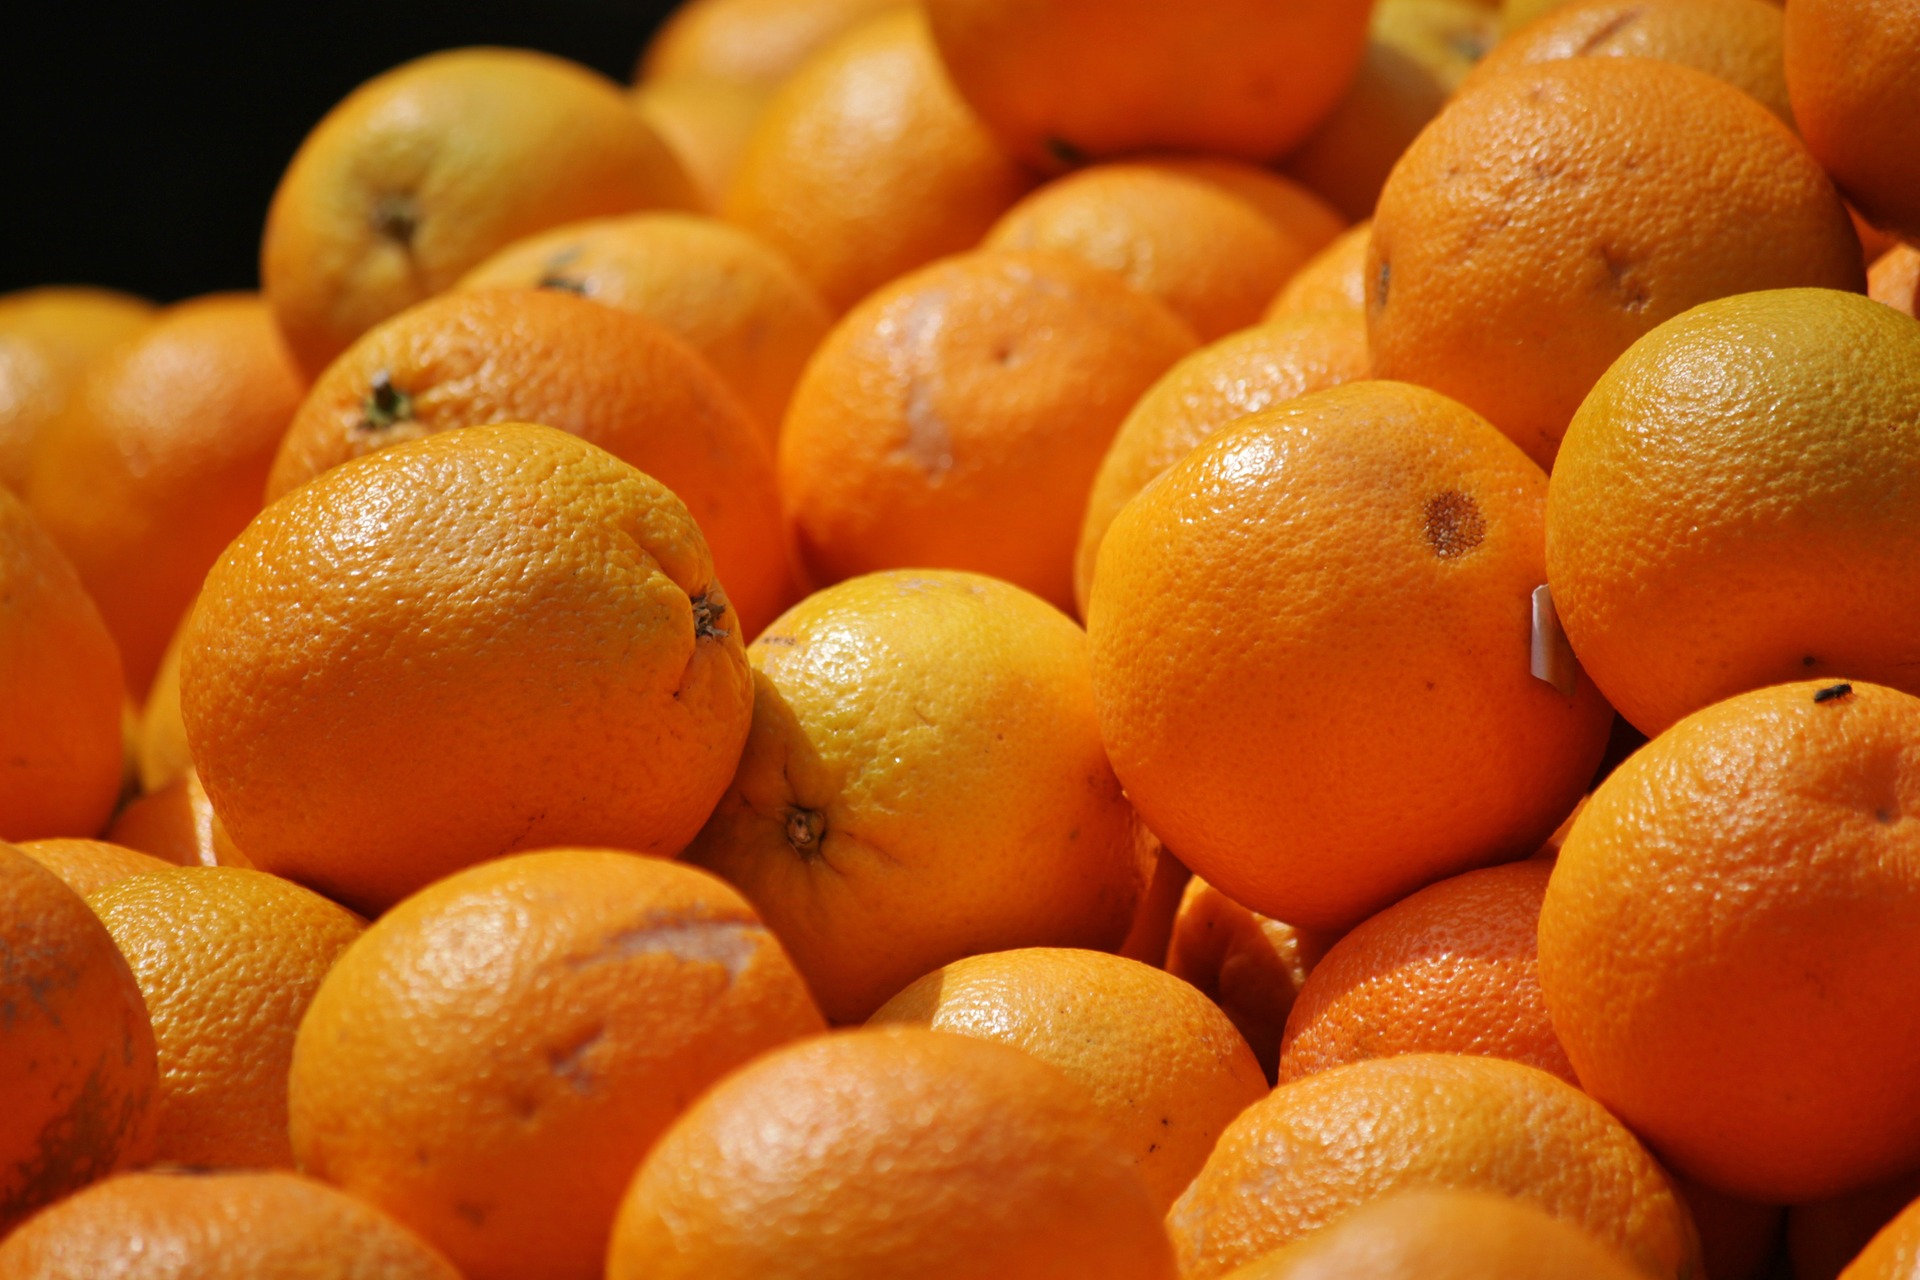 Bagno a Ripoli (FI): tornano le arance della legalità